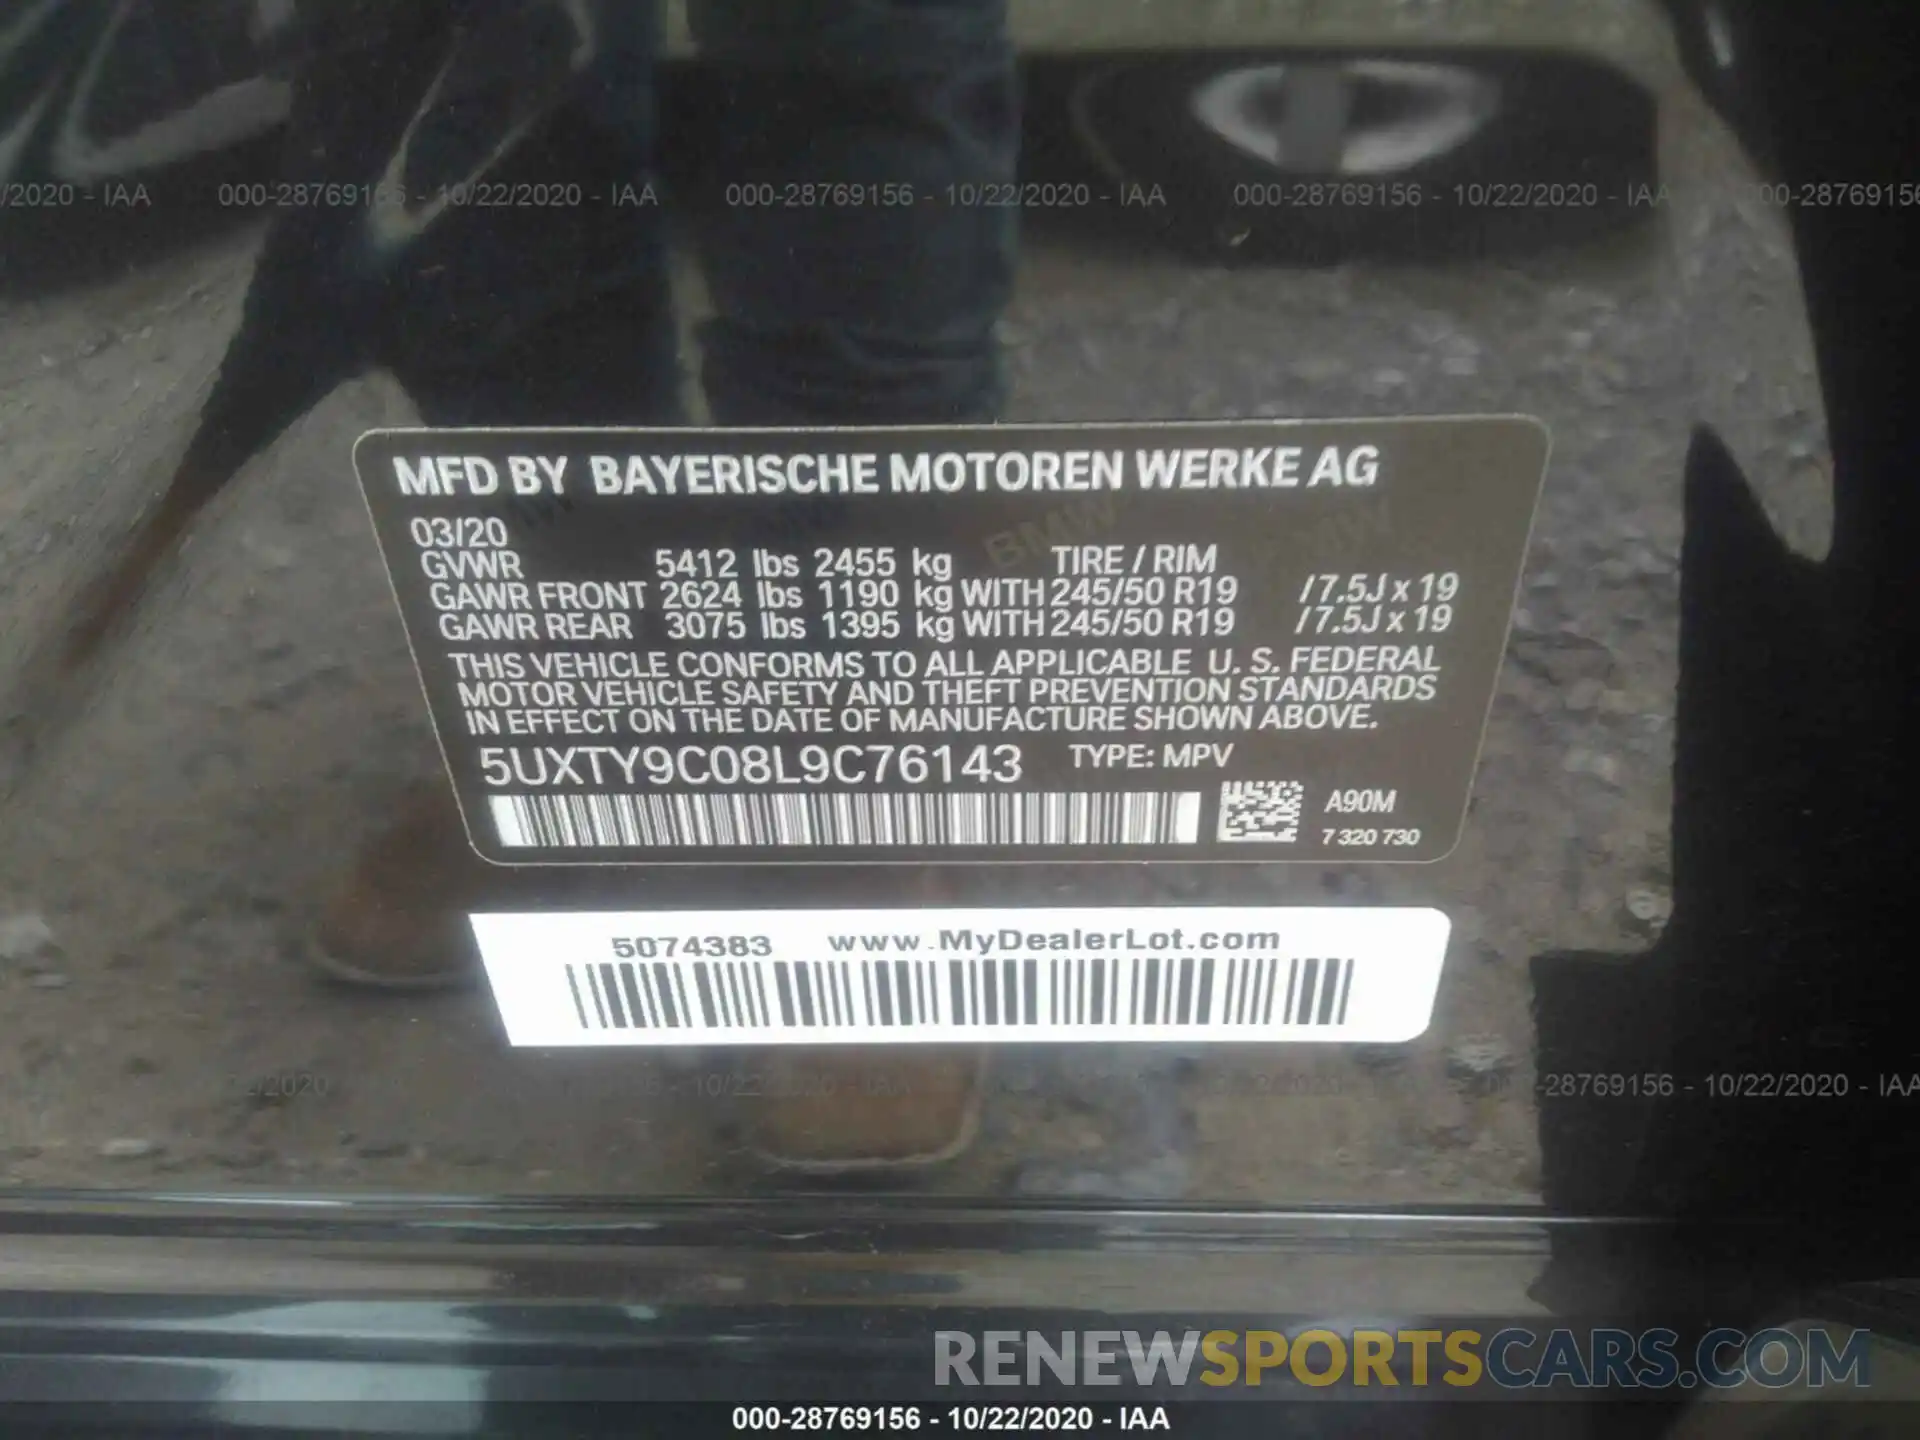 9 Фотография поврежденного автомобиля 5UXTY9C08L9C76143 BMW X3 2020